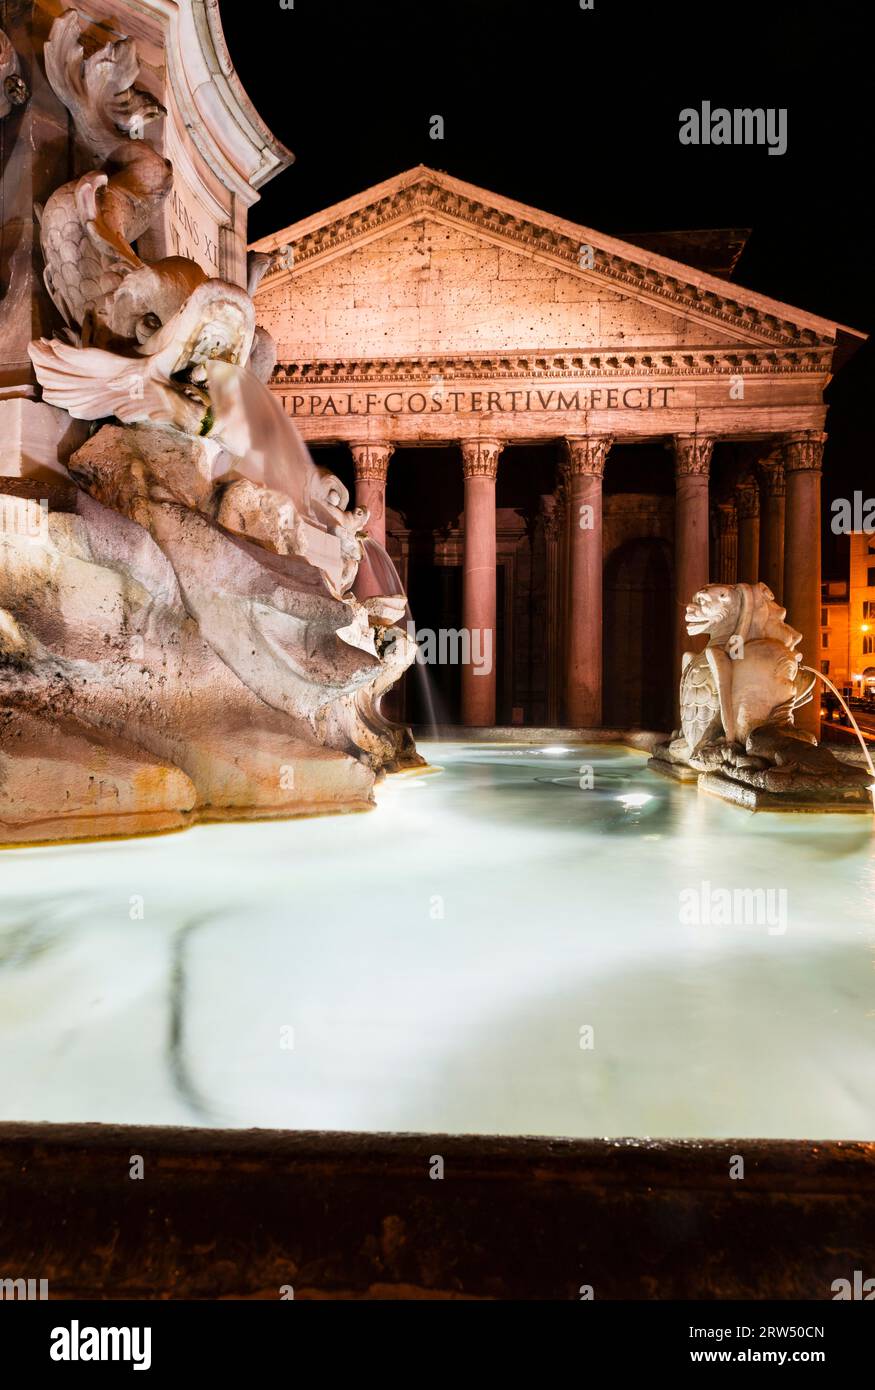 Piazza Rotonda, Pantheon, 119 125 AD Reign of Emperor Hadrian, Fountain Piazza Rotonda by Giacomo Della Porta and Leonardo Sormani, c. 1575, Rome Stock Photo